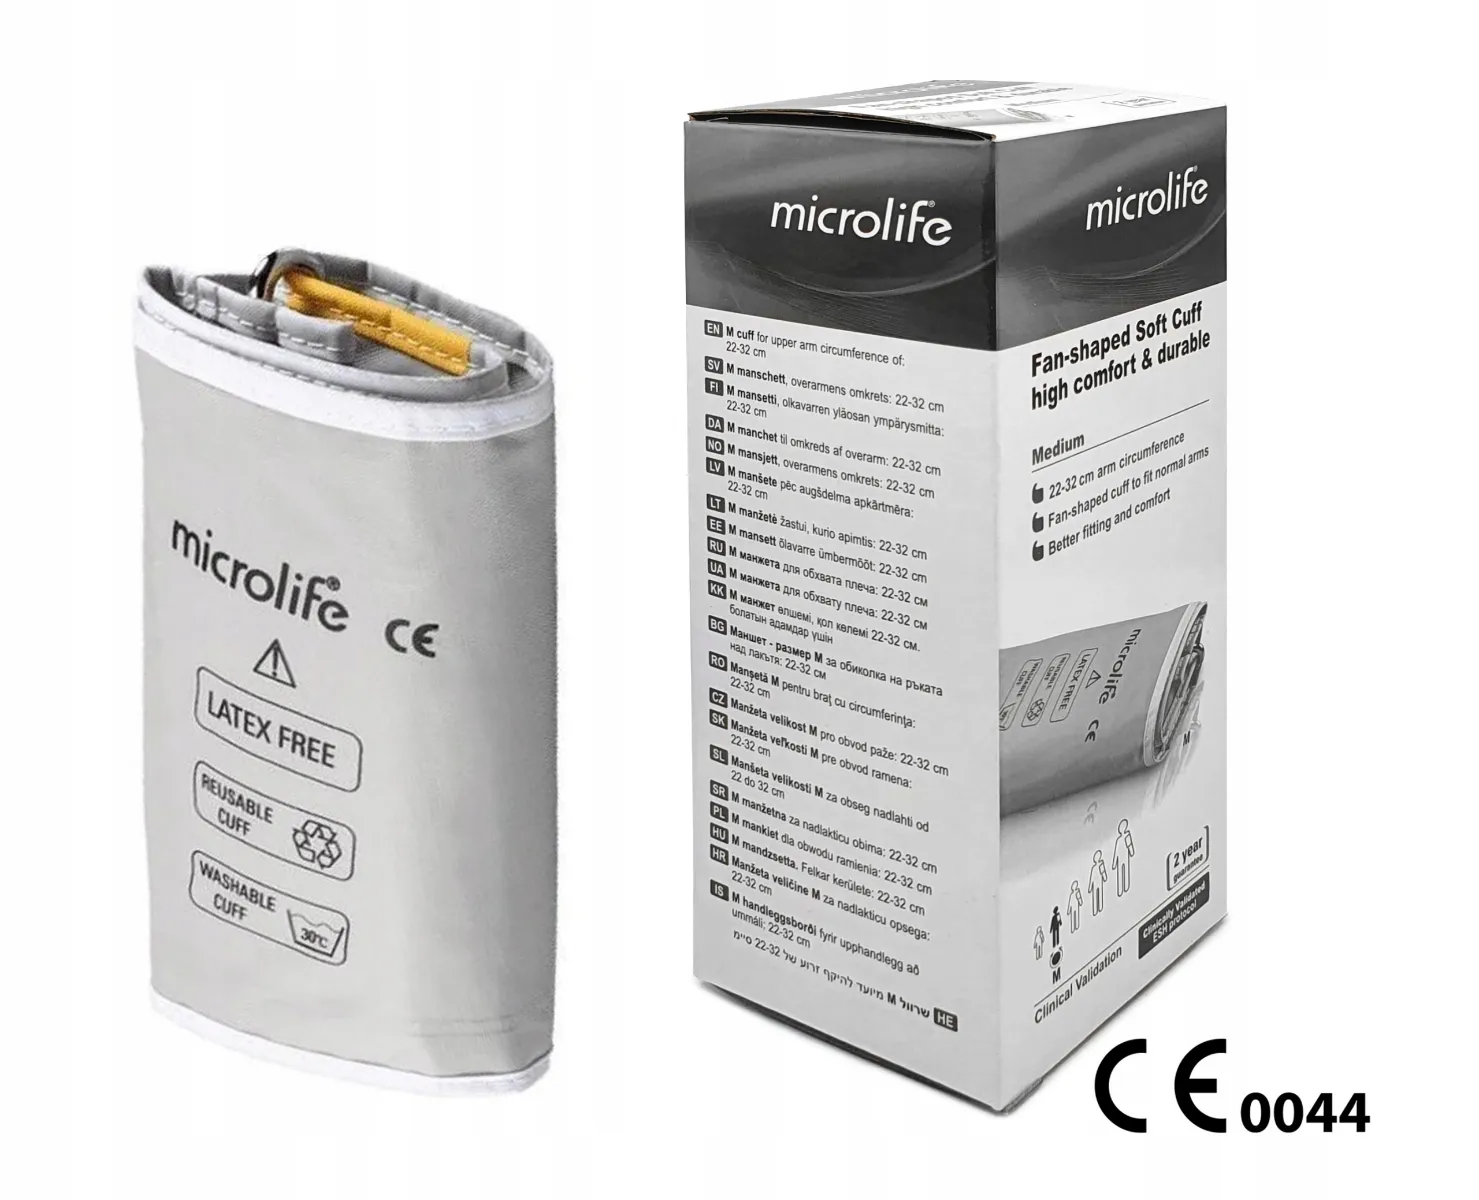 Microlife, mankiet do ciśnieniomierza 3 G, rozmiar M (22-32 cm), 1 sztuka 